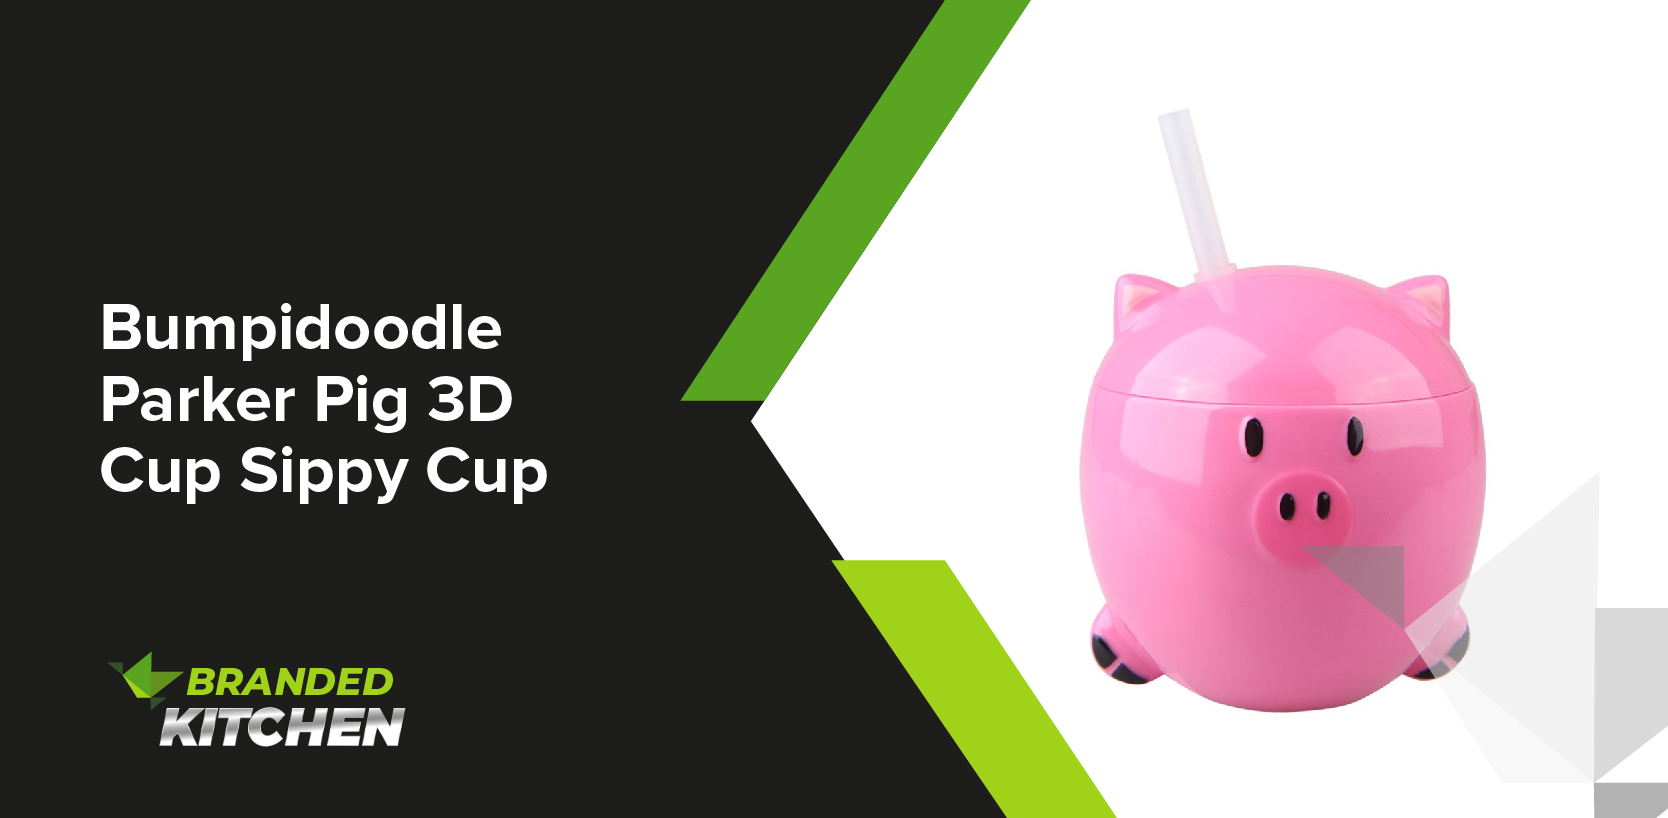 Bumpidoodle Parker Pig 3D Cup Sippy Cup